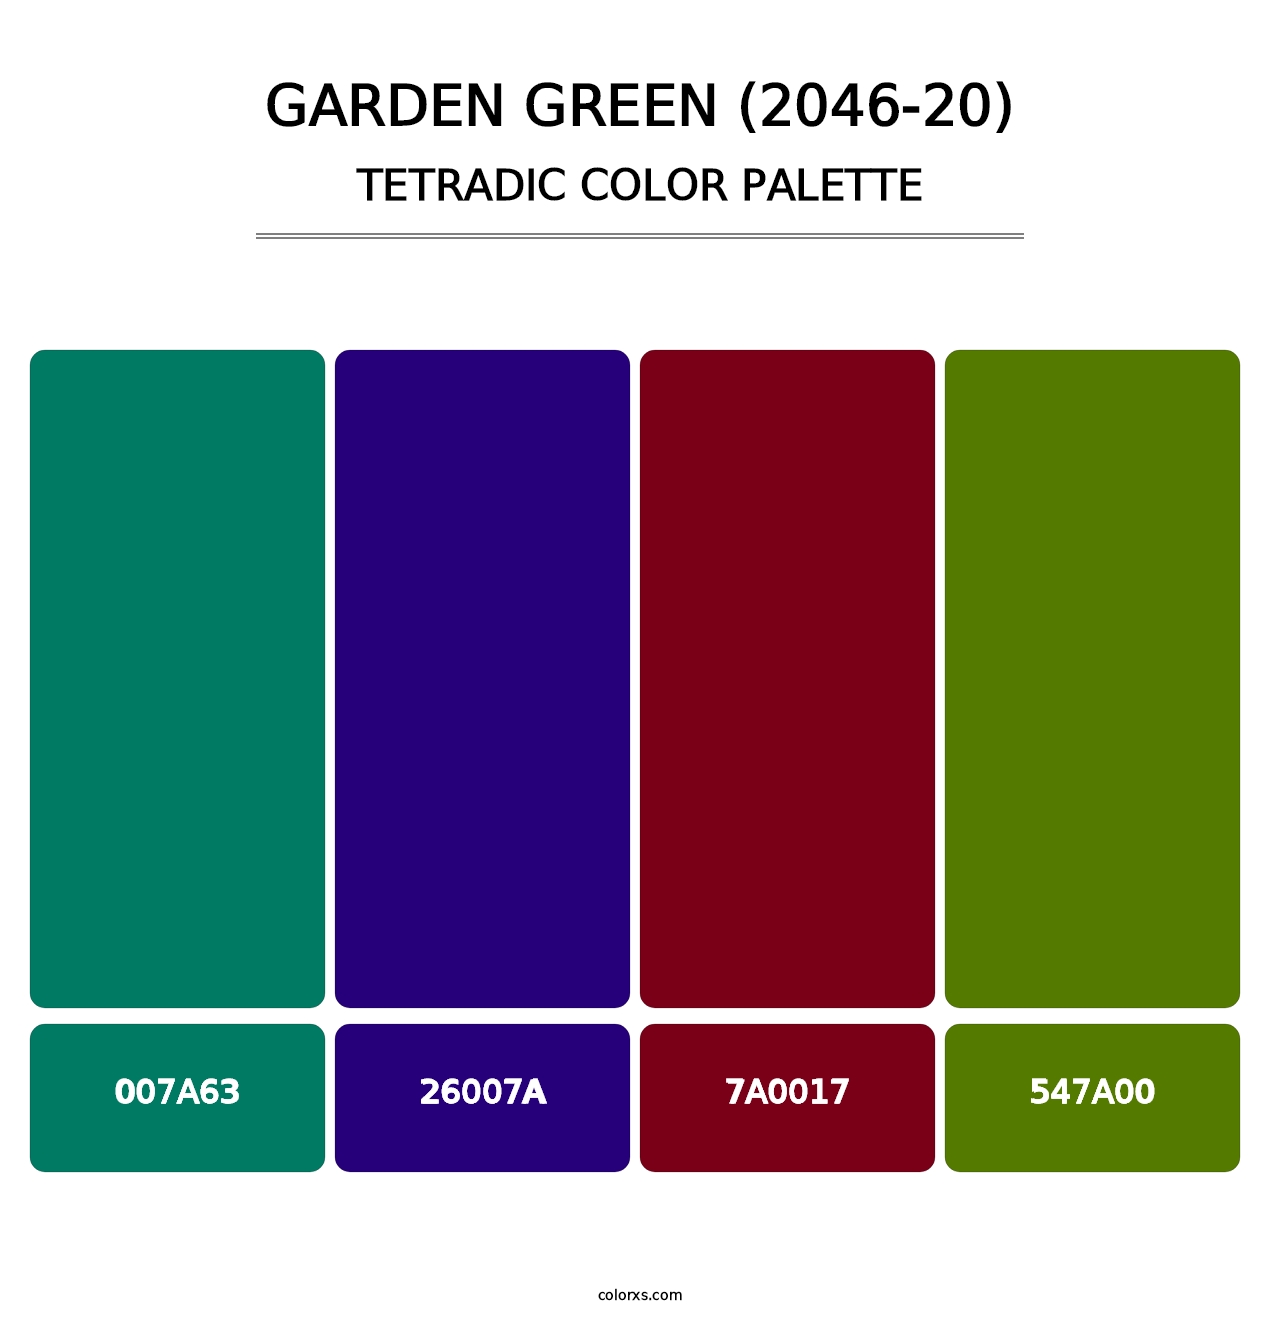 Garden Green (2046-20) - Tetradic Color Palette